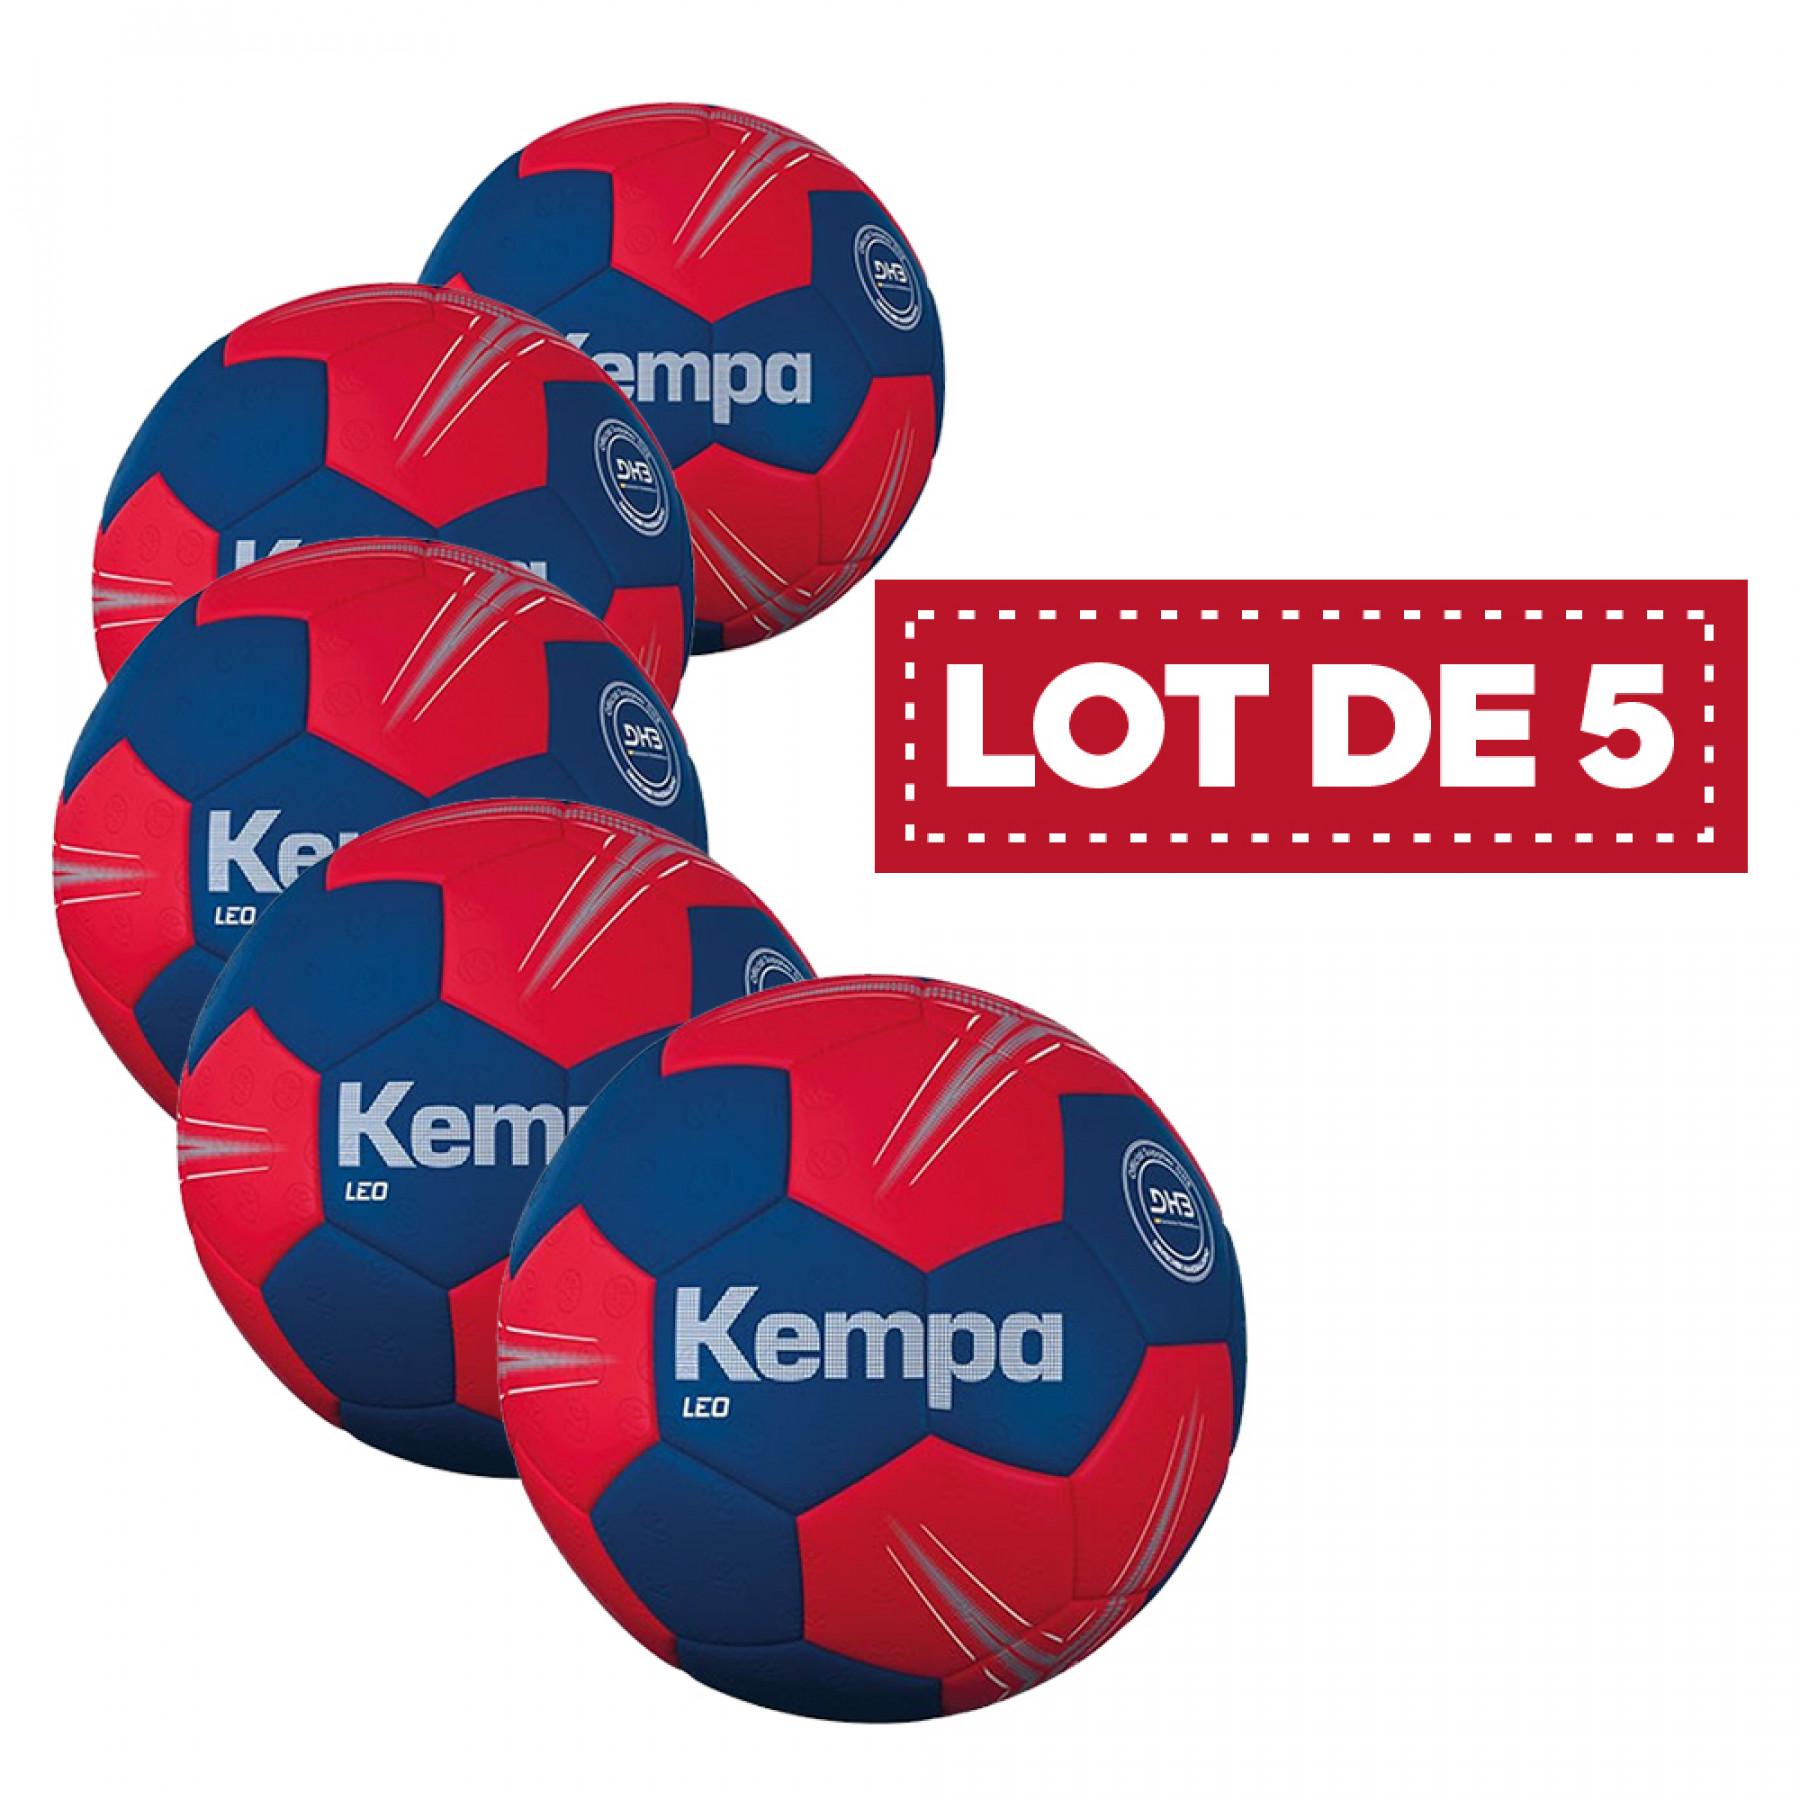 Conjunto de 5 balões de leo Kempa